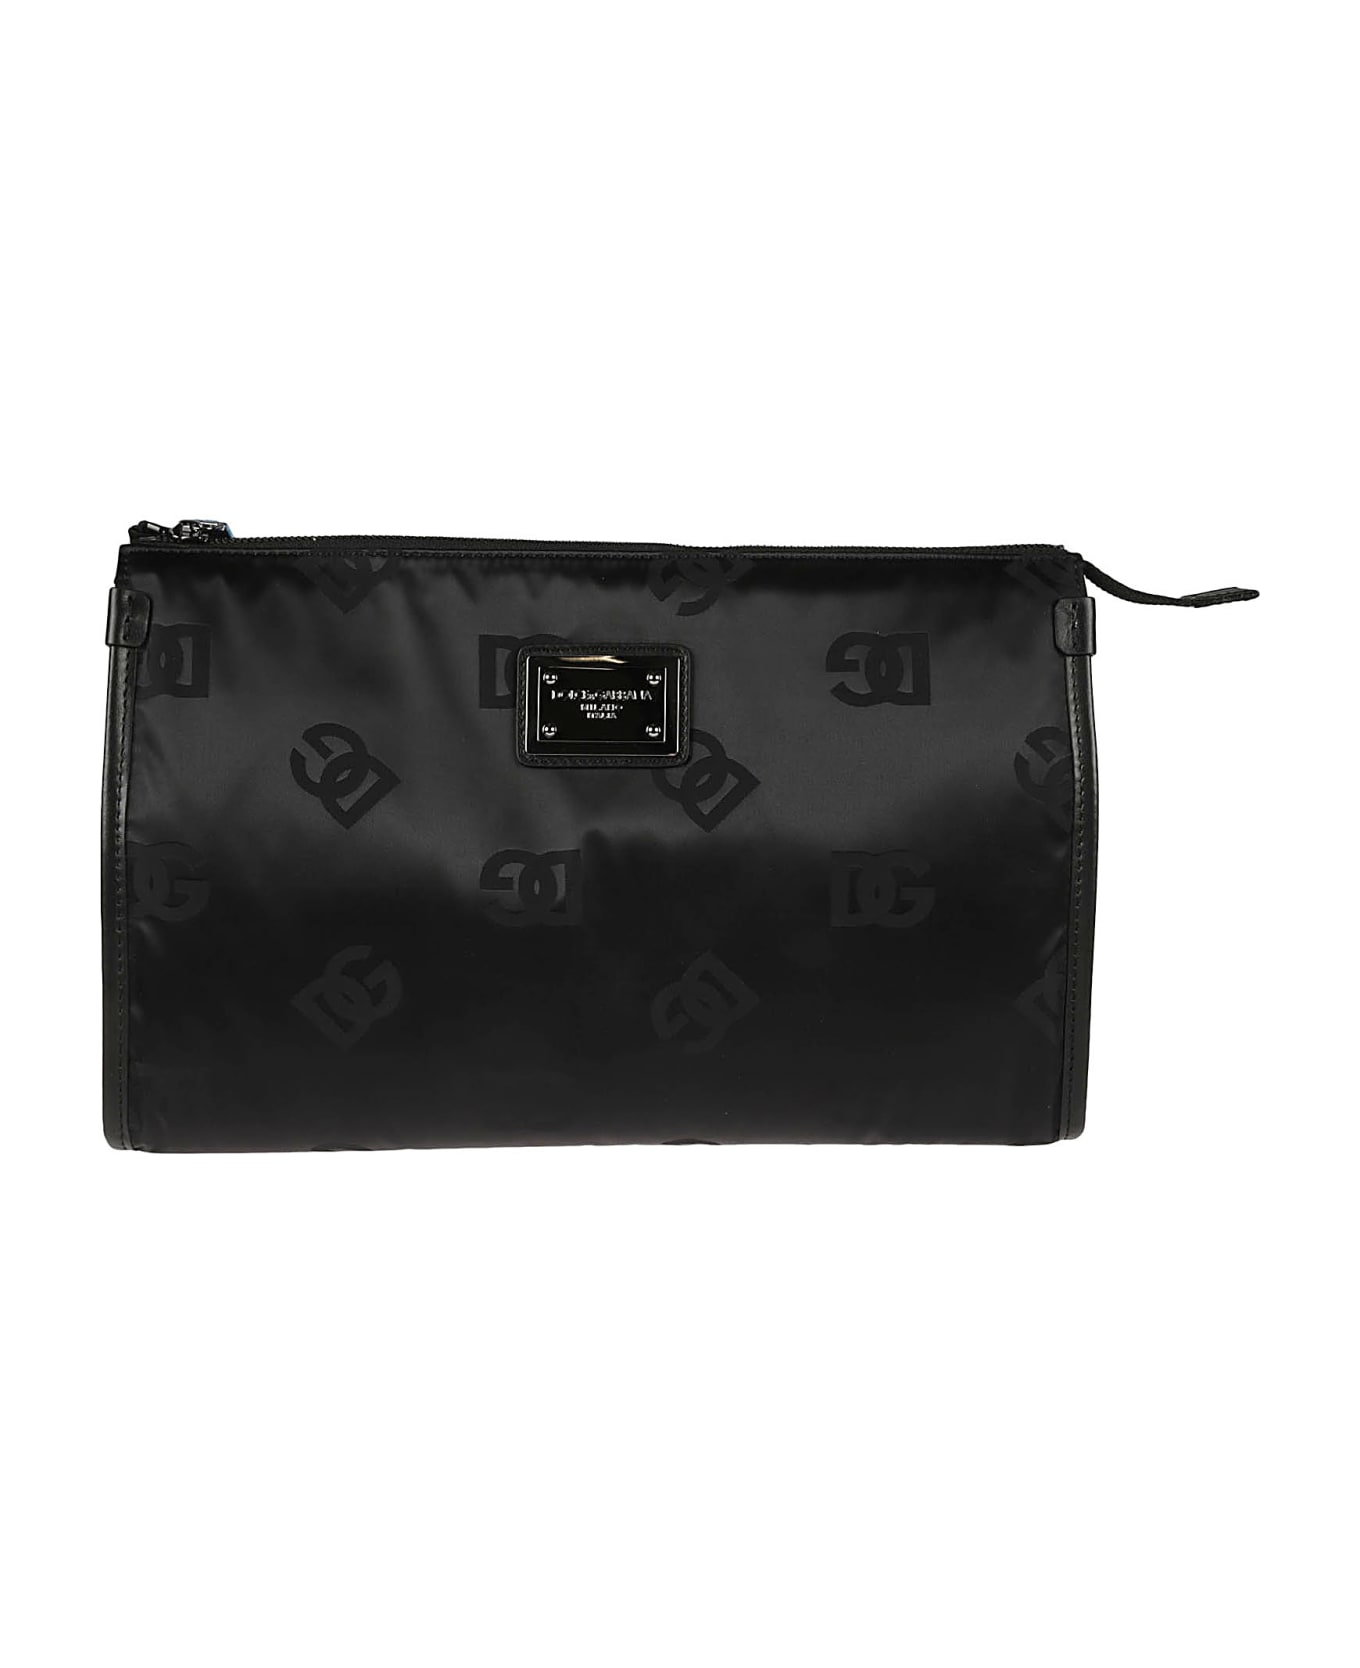 Dolce & Gabbana Logo Plaque Top Zip Clutch - Black